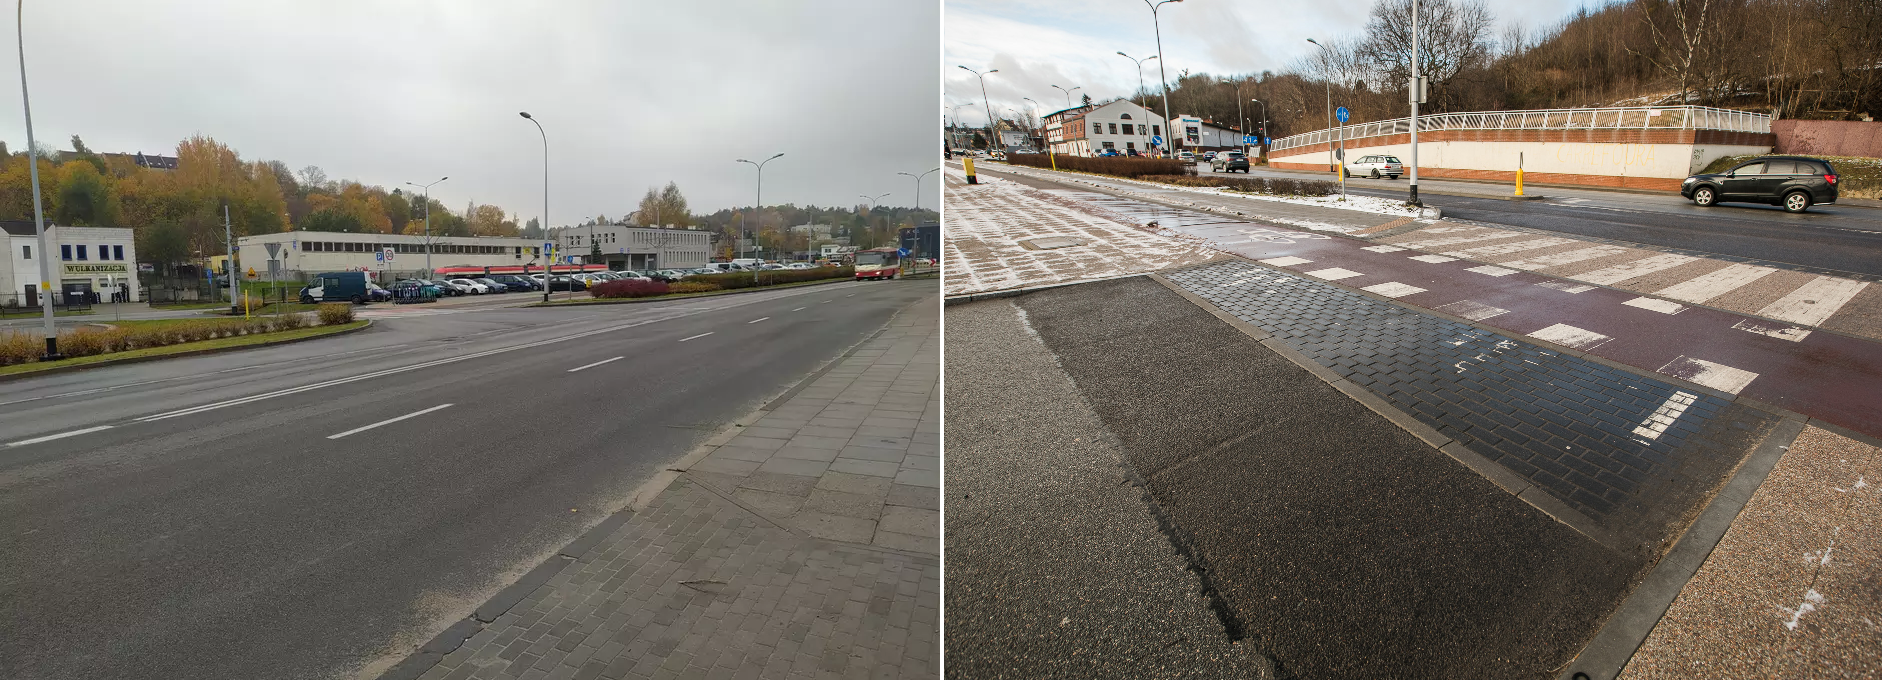 Zdjęcie przedstawia widok fragmentu ulicy Kartuskiej przed i po wykonaniu przebudowy